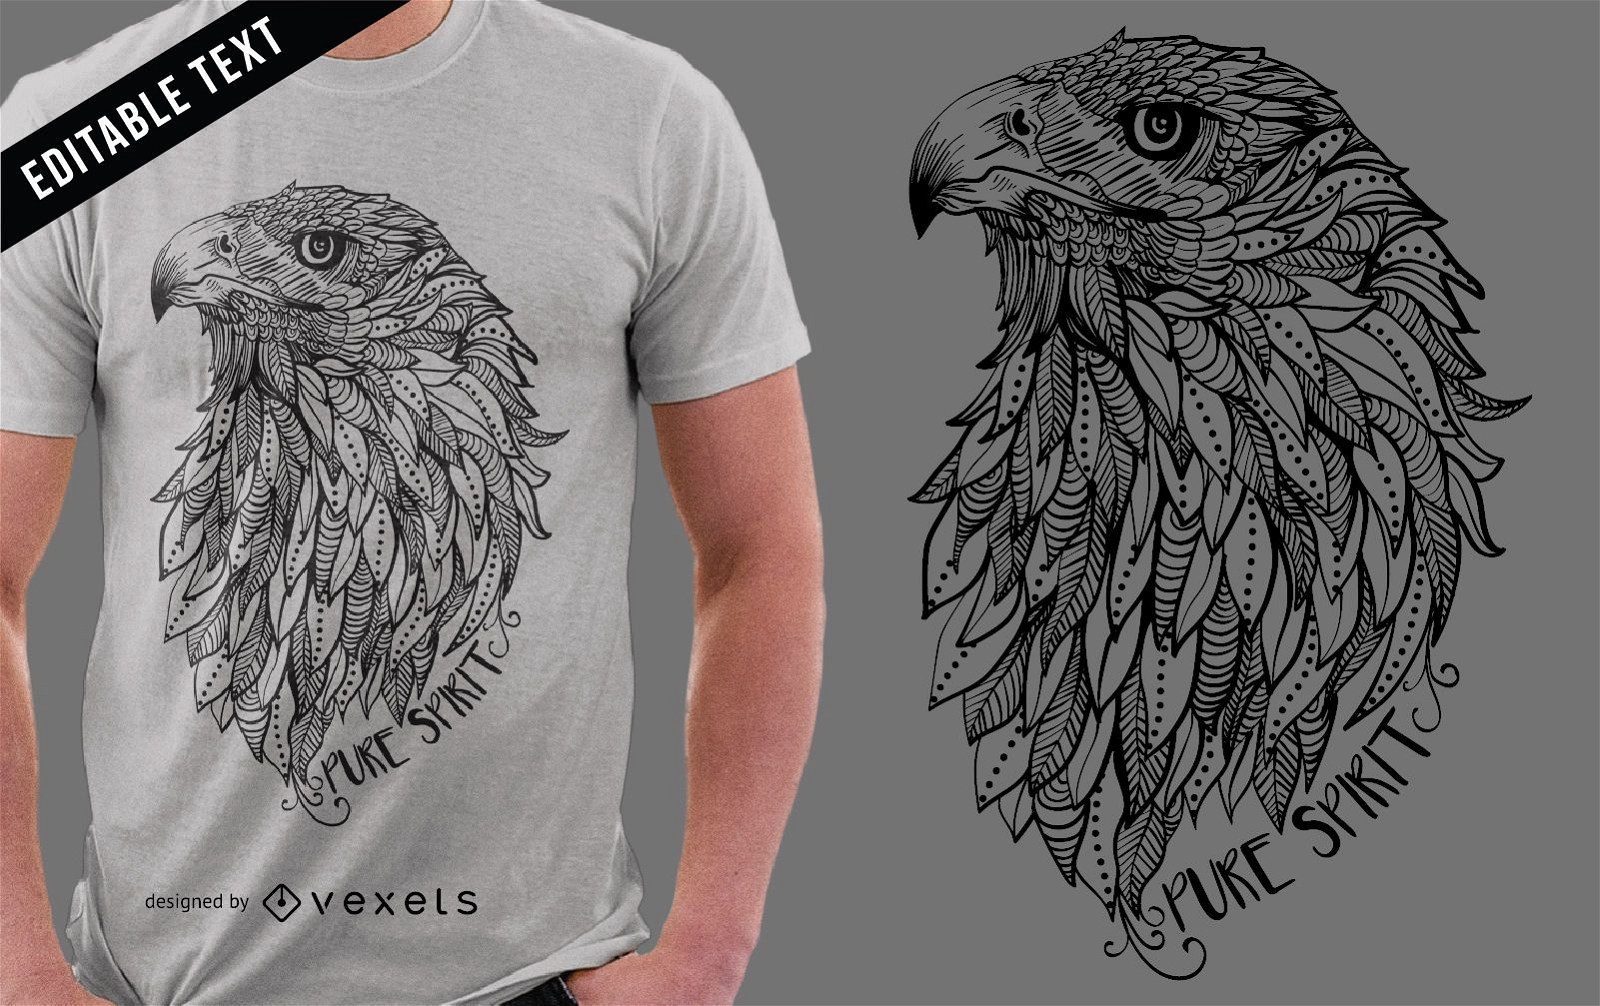 Desenho de t-shirt com ilustra??o Eagle